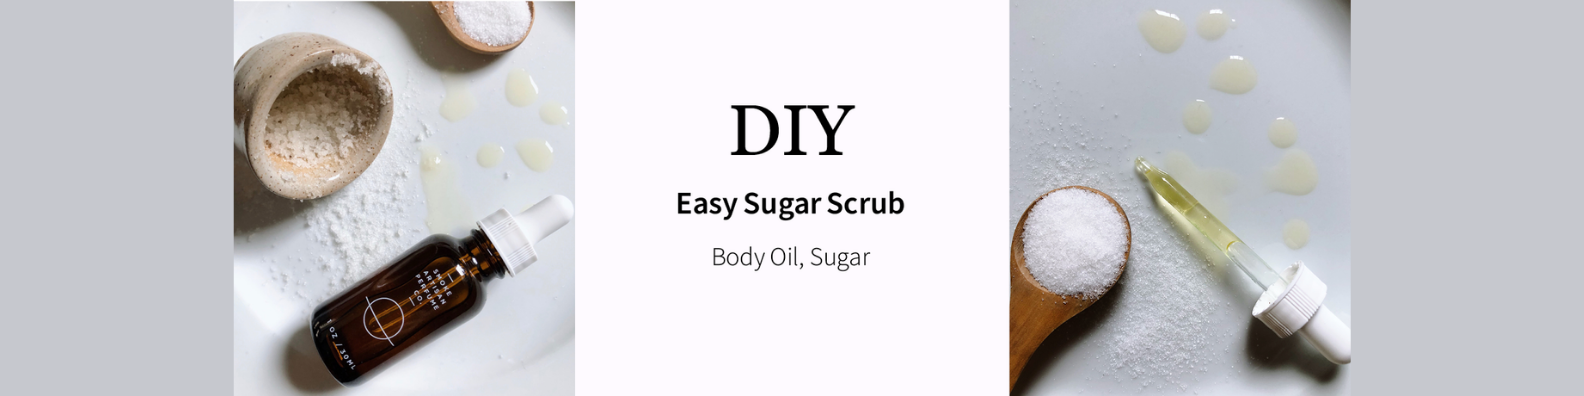 DIY: Easy Sugar Scrub